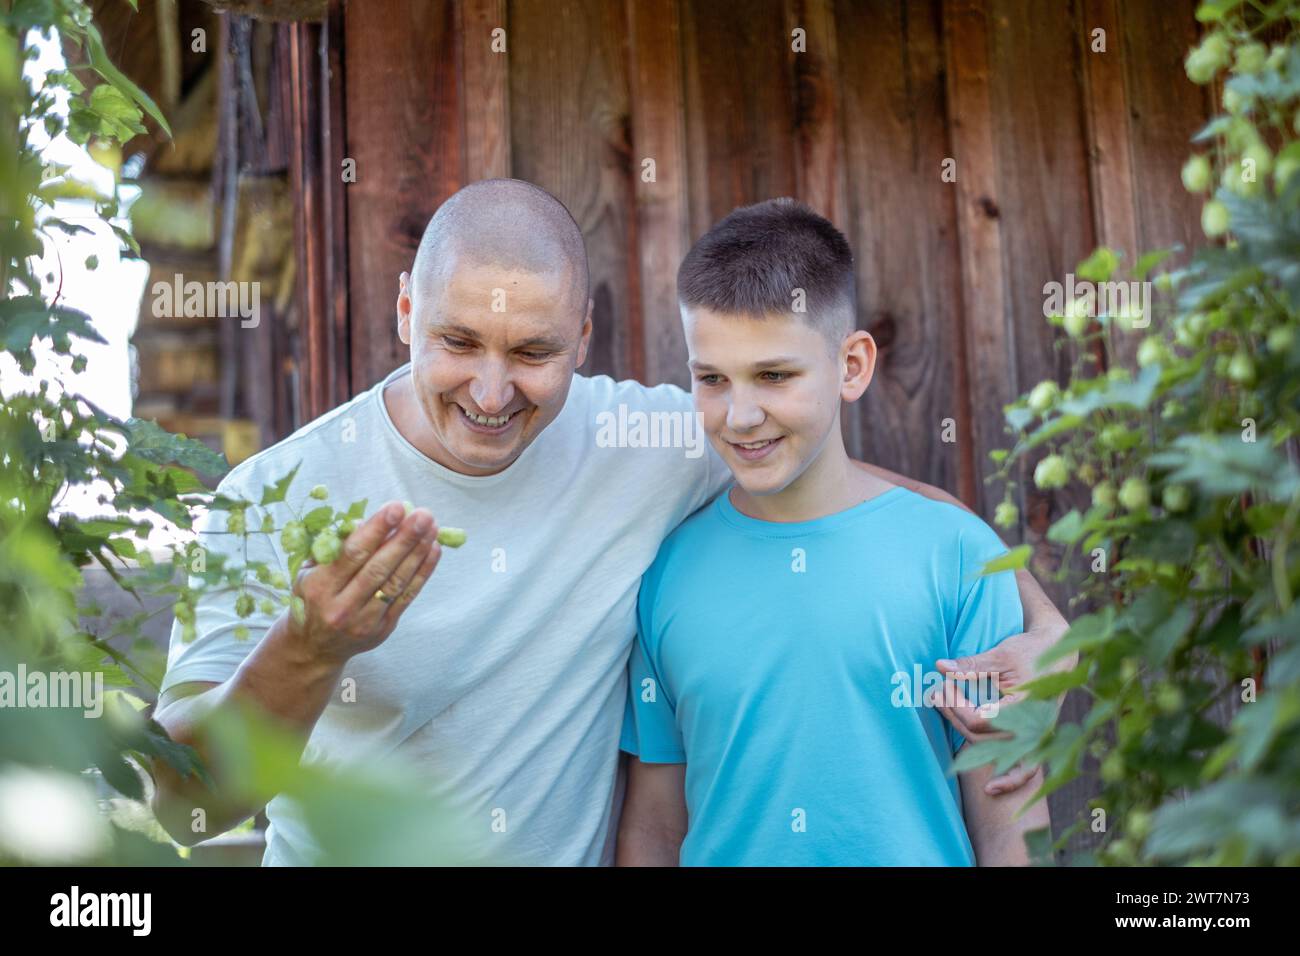 Ein Mann und ein Junge, Vater und Sohn, teilen einen Moment der Freude, während sie Pflanzen in einem Garten vor einer hölzernen Kulisse, Familie Binding Zeit und Gesundheit in Stockfoto